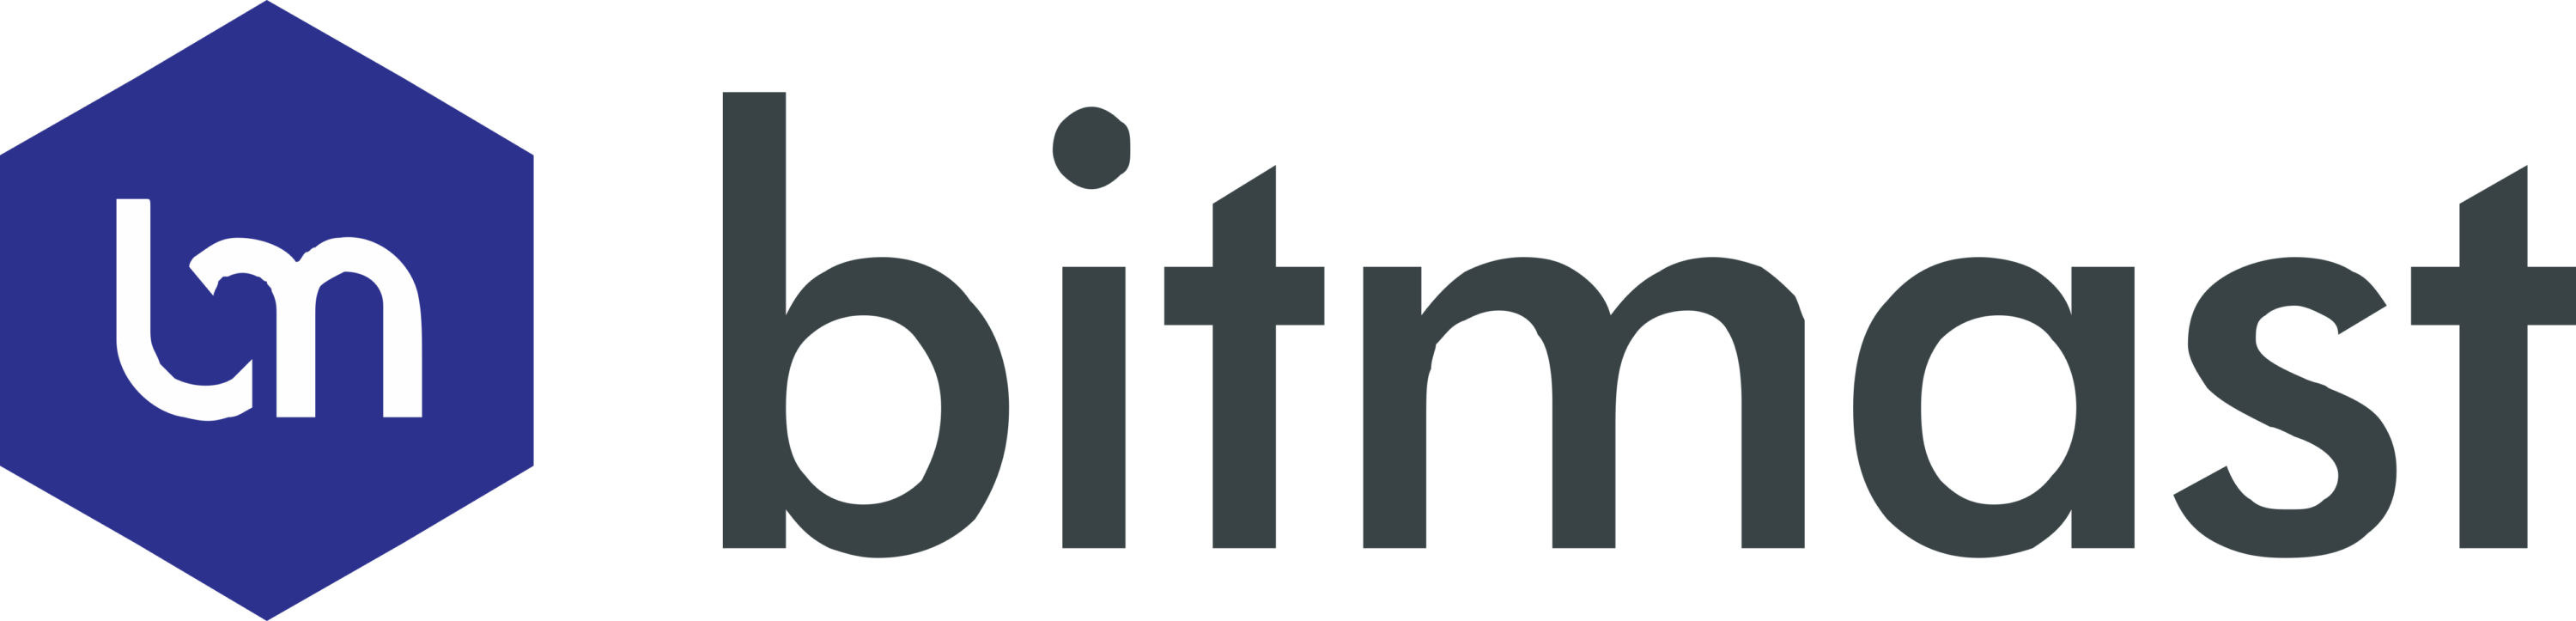 Bitmast Logo